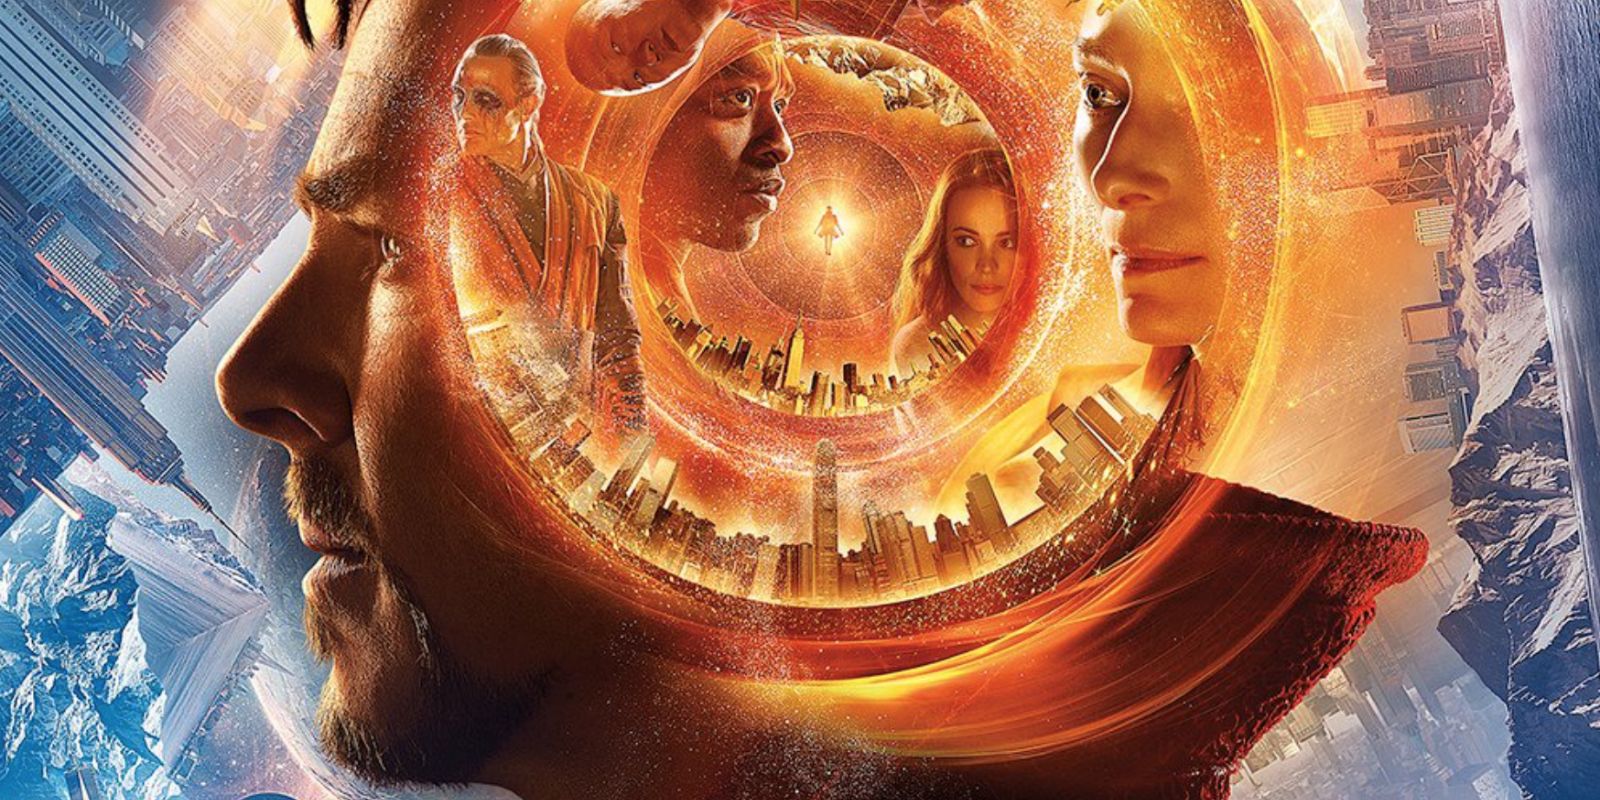 Doctor Strange IMAX Poster